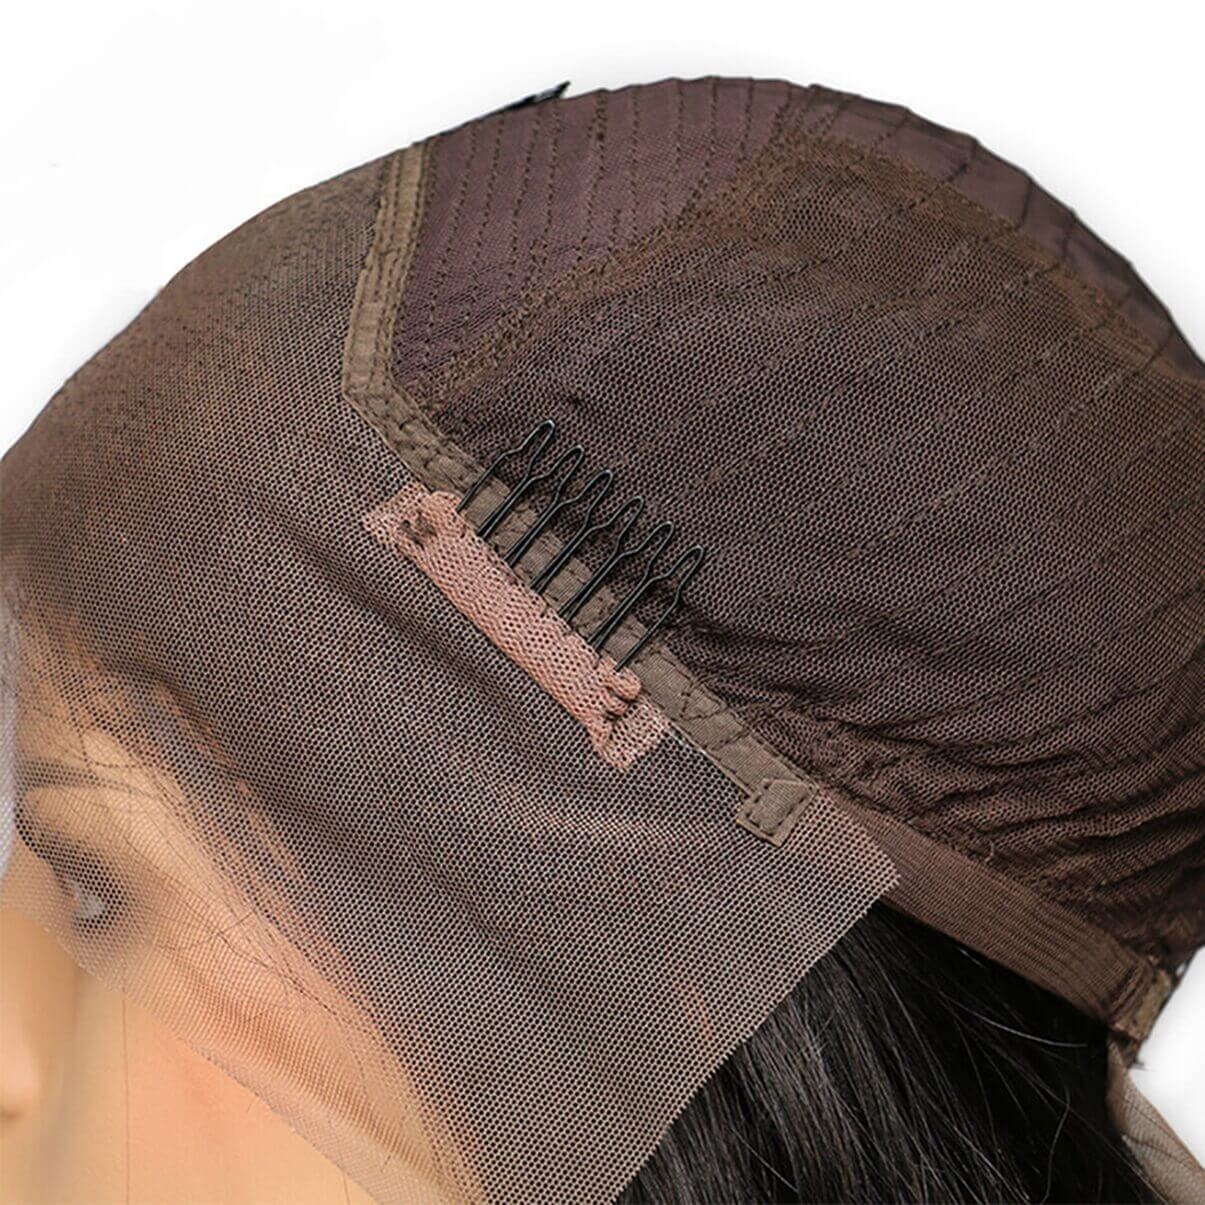 Lakihair Full Lace Virgin Human Hair Wigs Long Straight Hair Wigs 180% Density